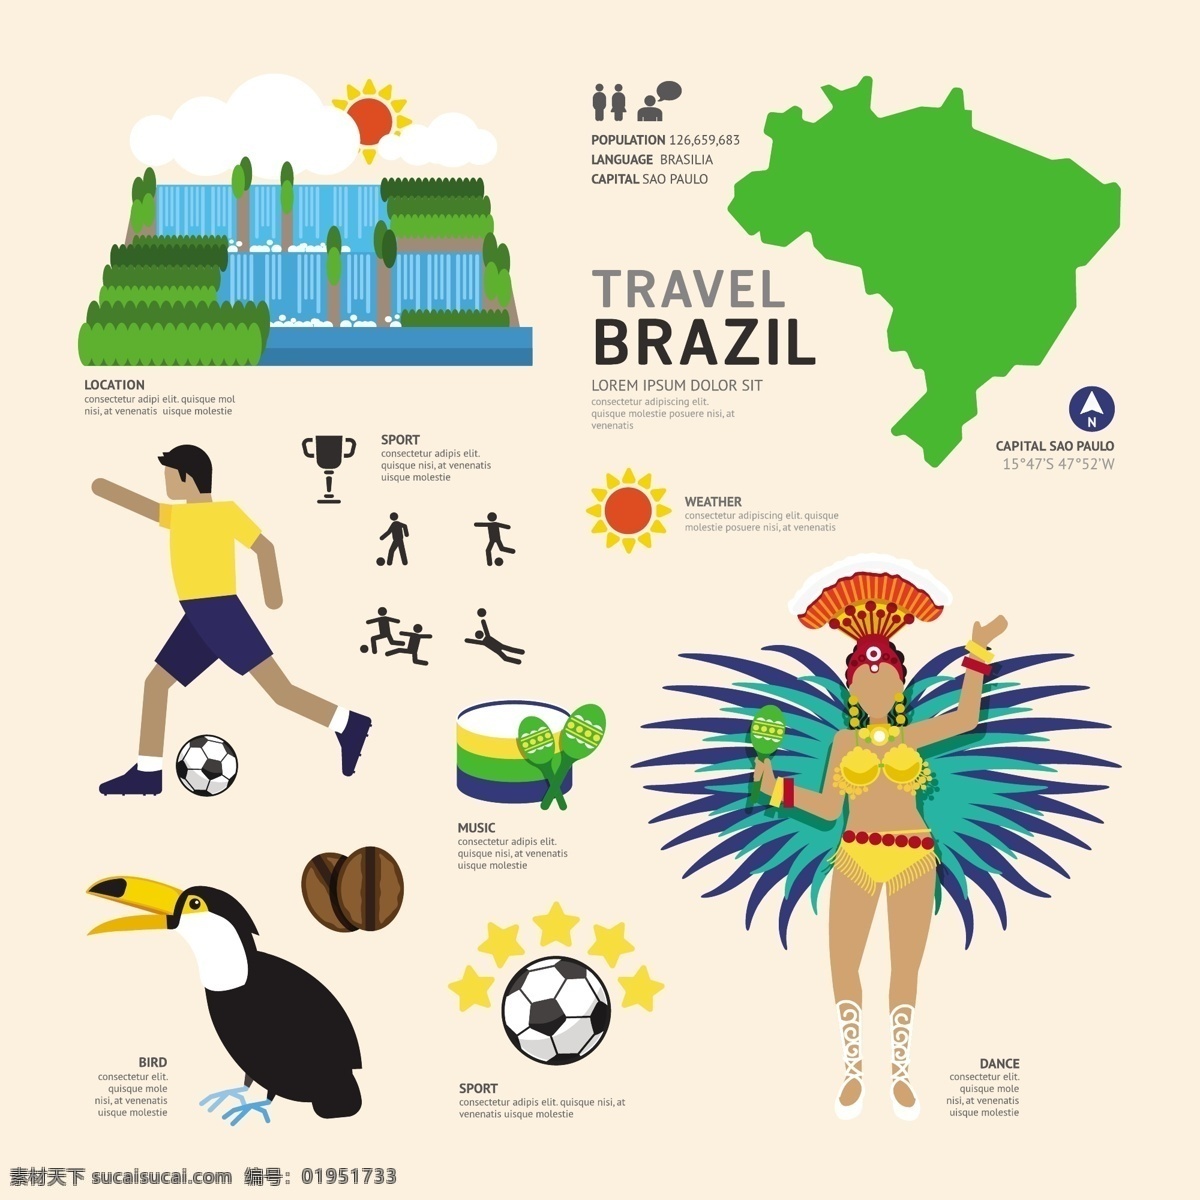 巴西旅游 南美风情 足球王国 桑巴 犀鸟 巴西轮廓 旅游 文化